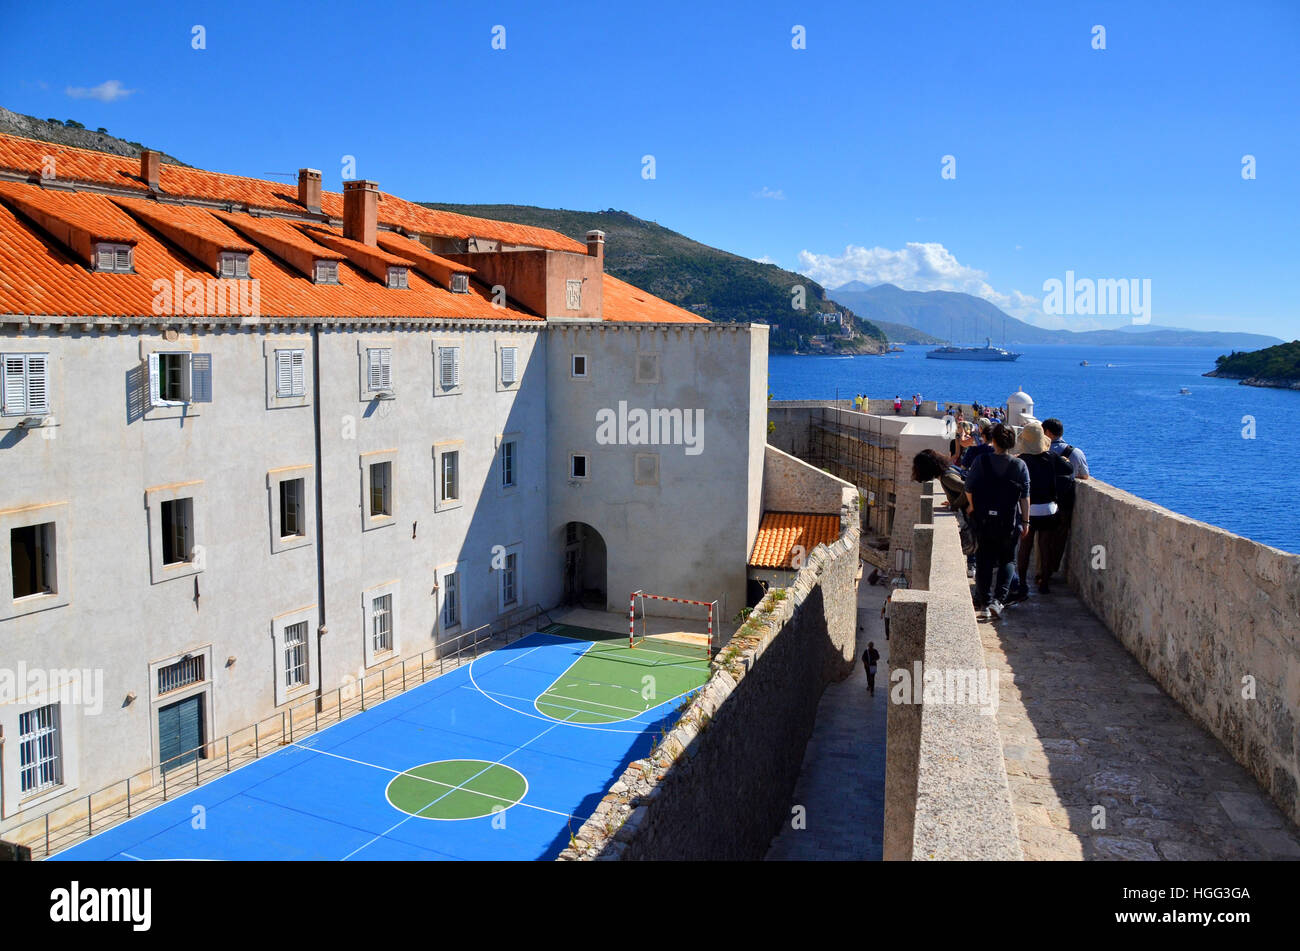 Les touristes à pied le long du mur de la ville fortifiée de Dubrovnik, Croatie, passant d'une cour de netball appartenant à une école locale. Banque D'Images